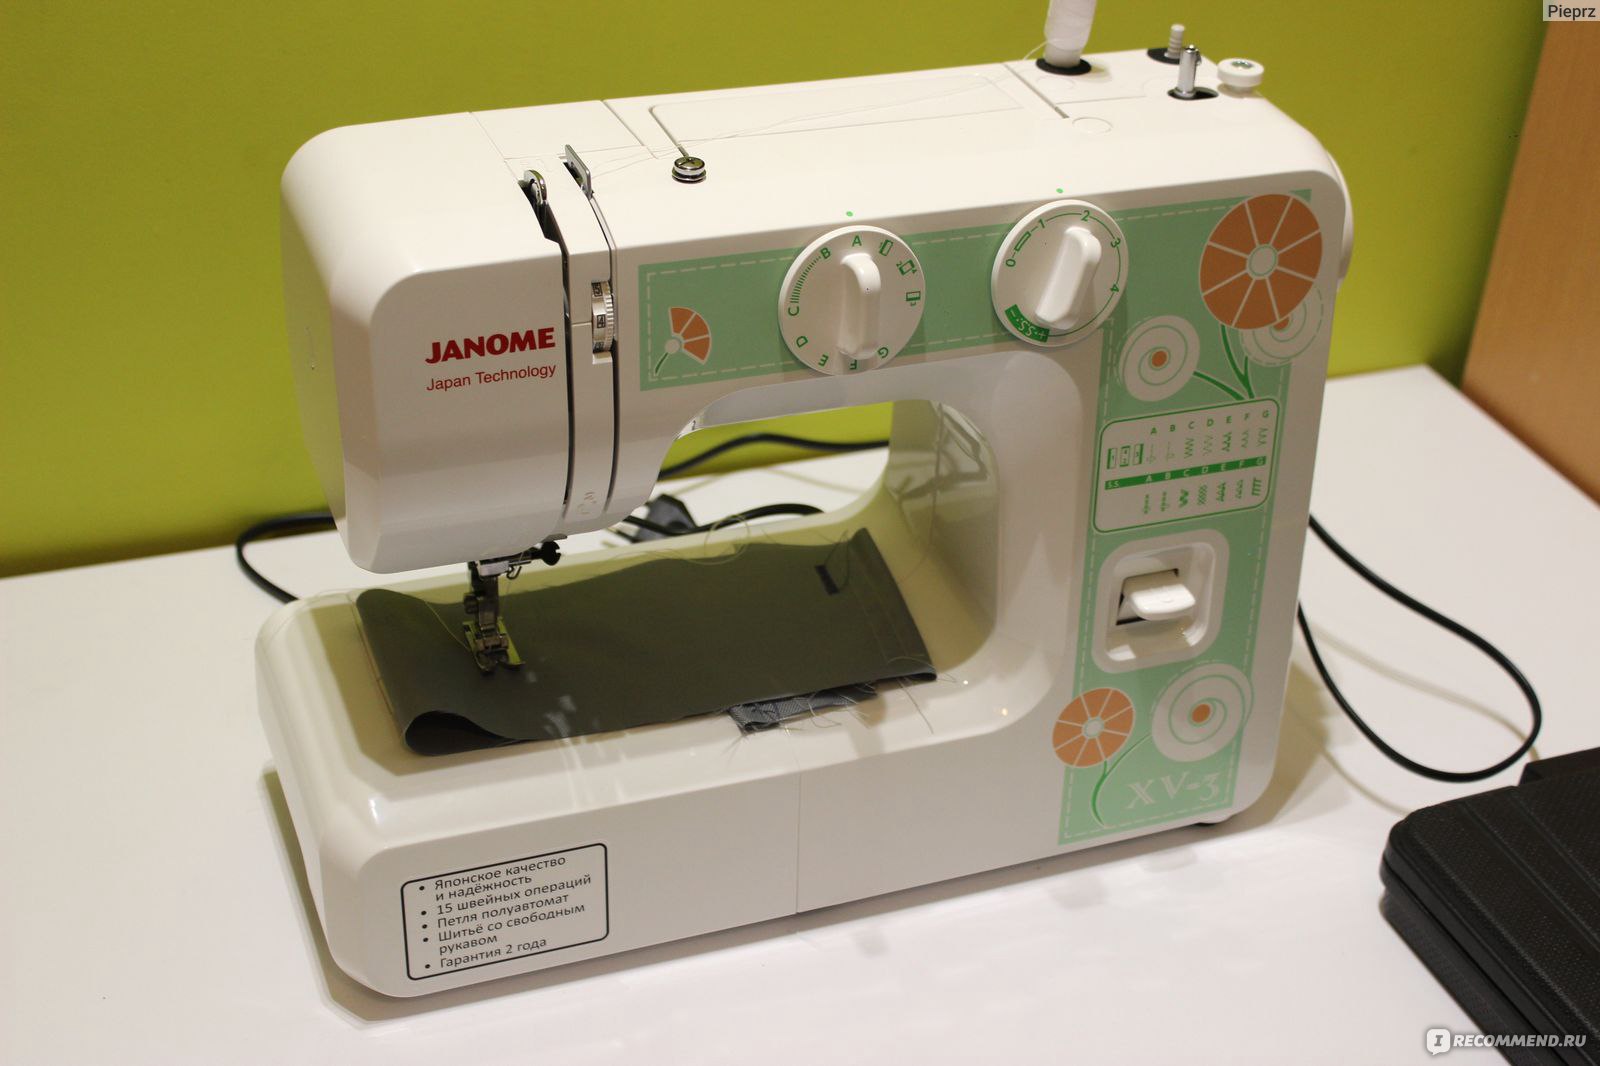 Обзор джаном. Швейная машинка Janome xv3. Janome XV-3. Janome XV-3 швейная машина. Janome Japan Technology швейная машинка.